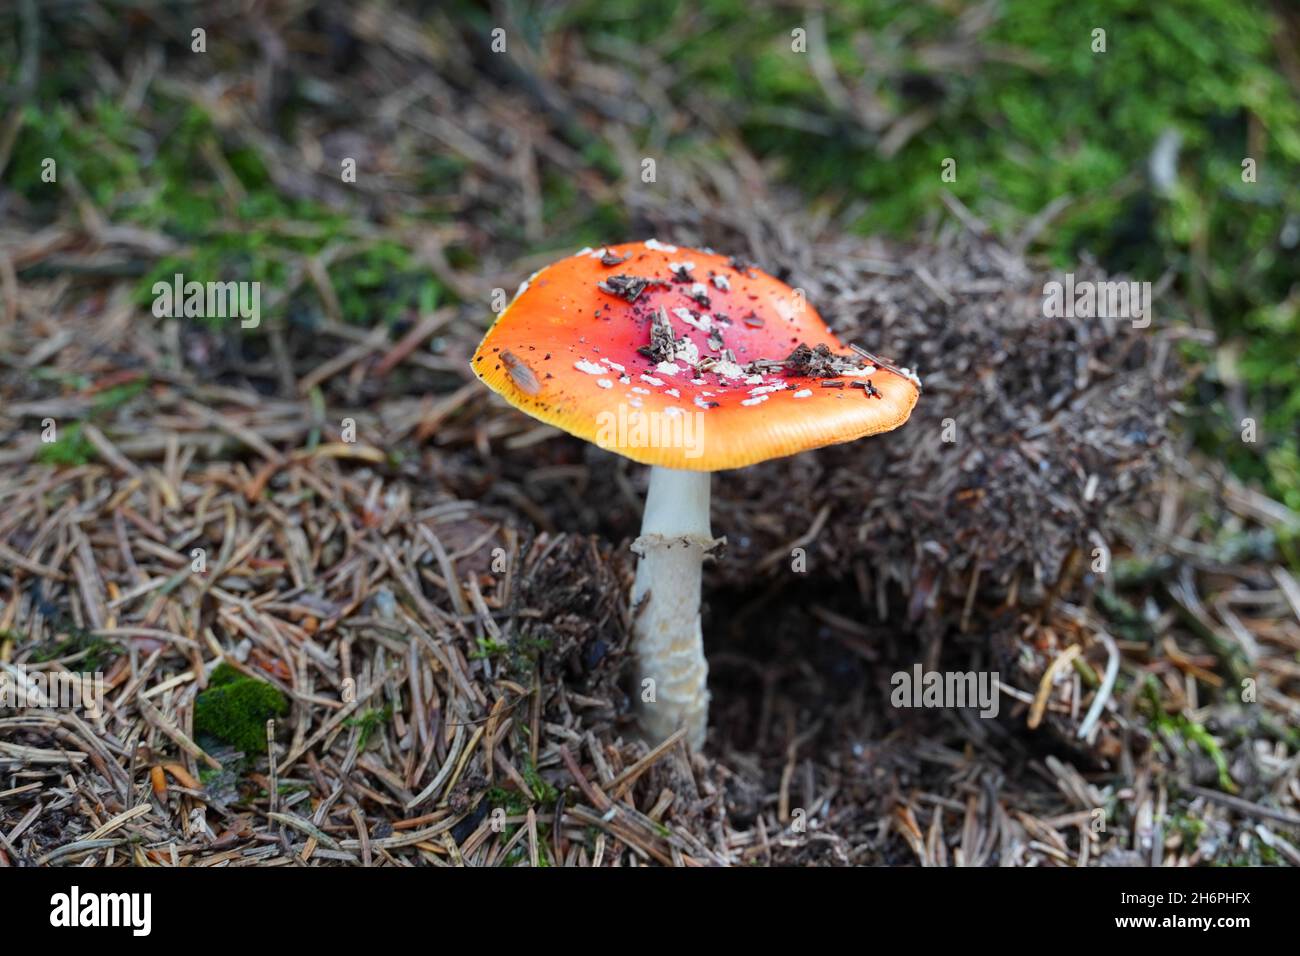 Mouche fraîche agarique sur le sol de la forêt.Champignon rouge avec taches blanches.Toxique.Amanita muscaria. Banque D'Images